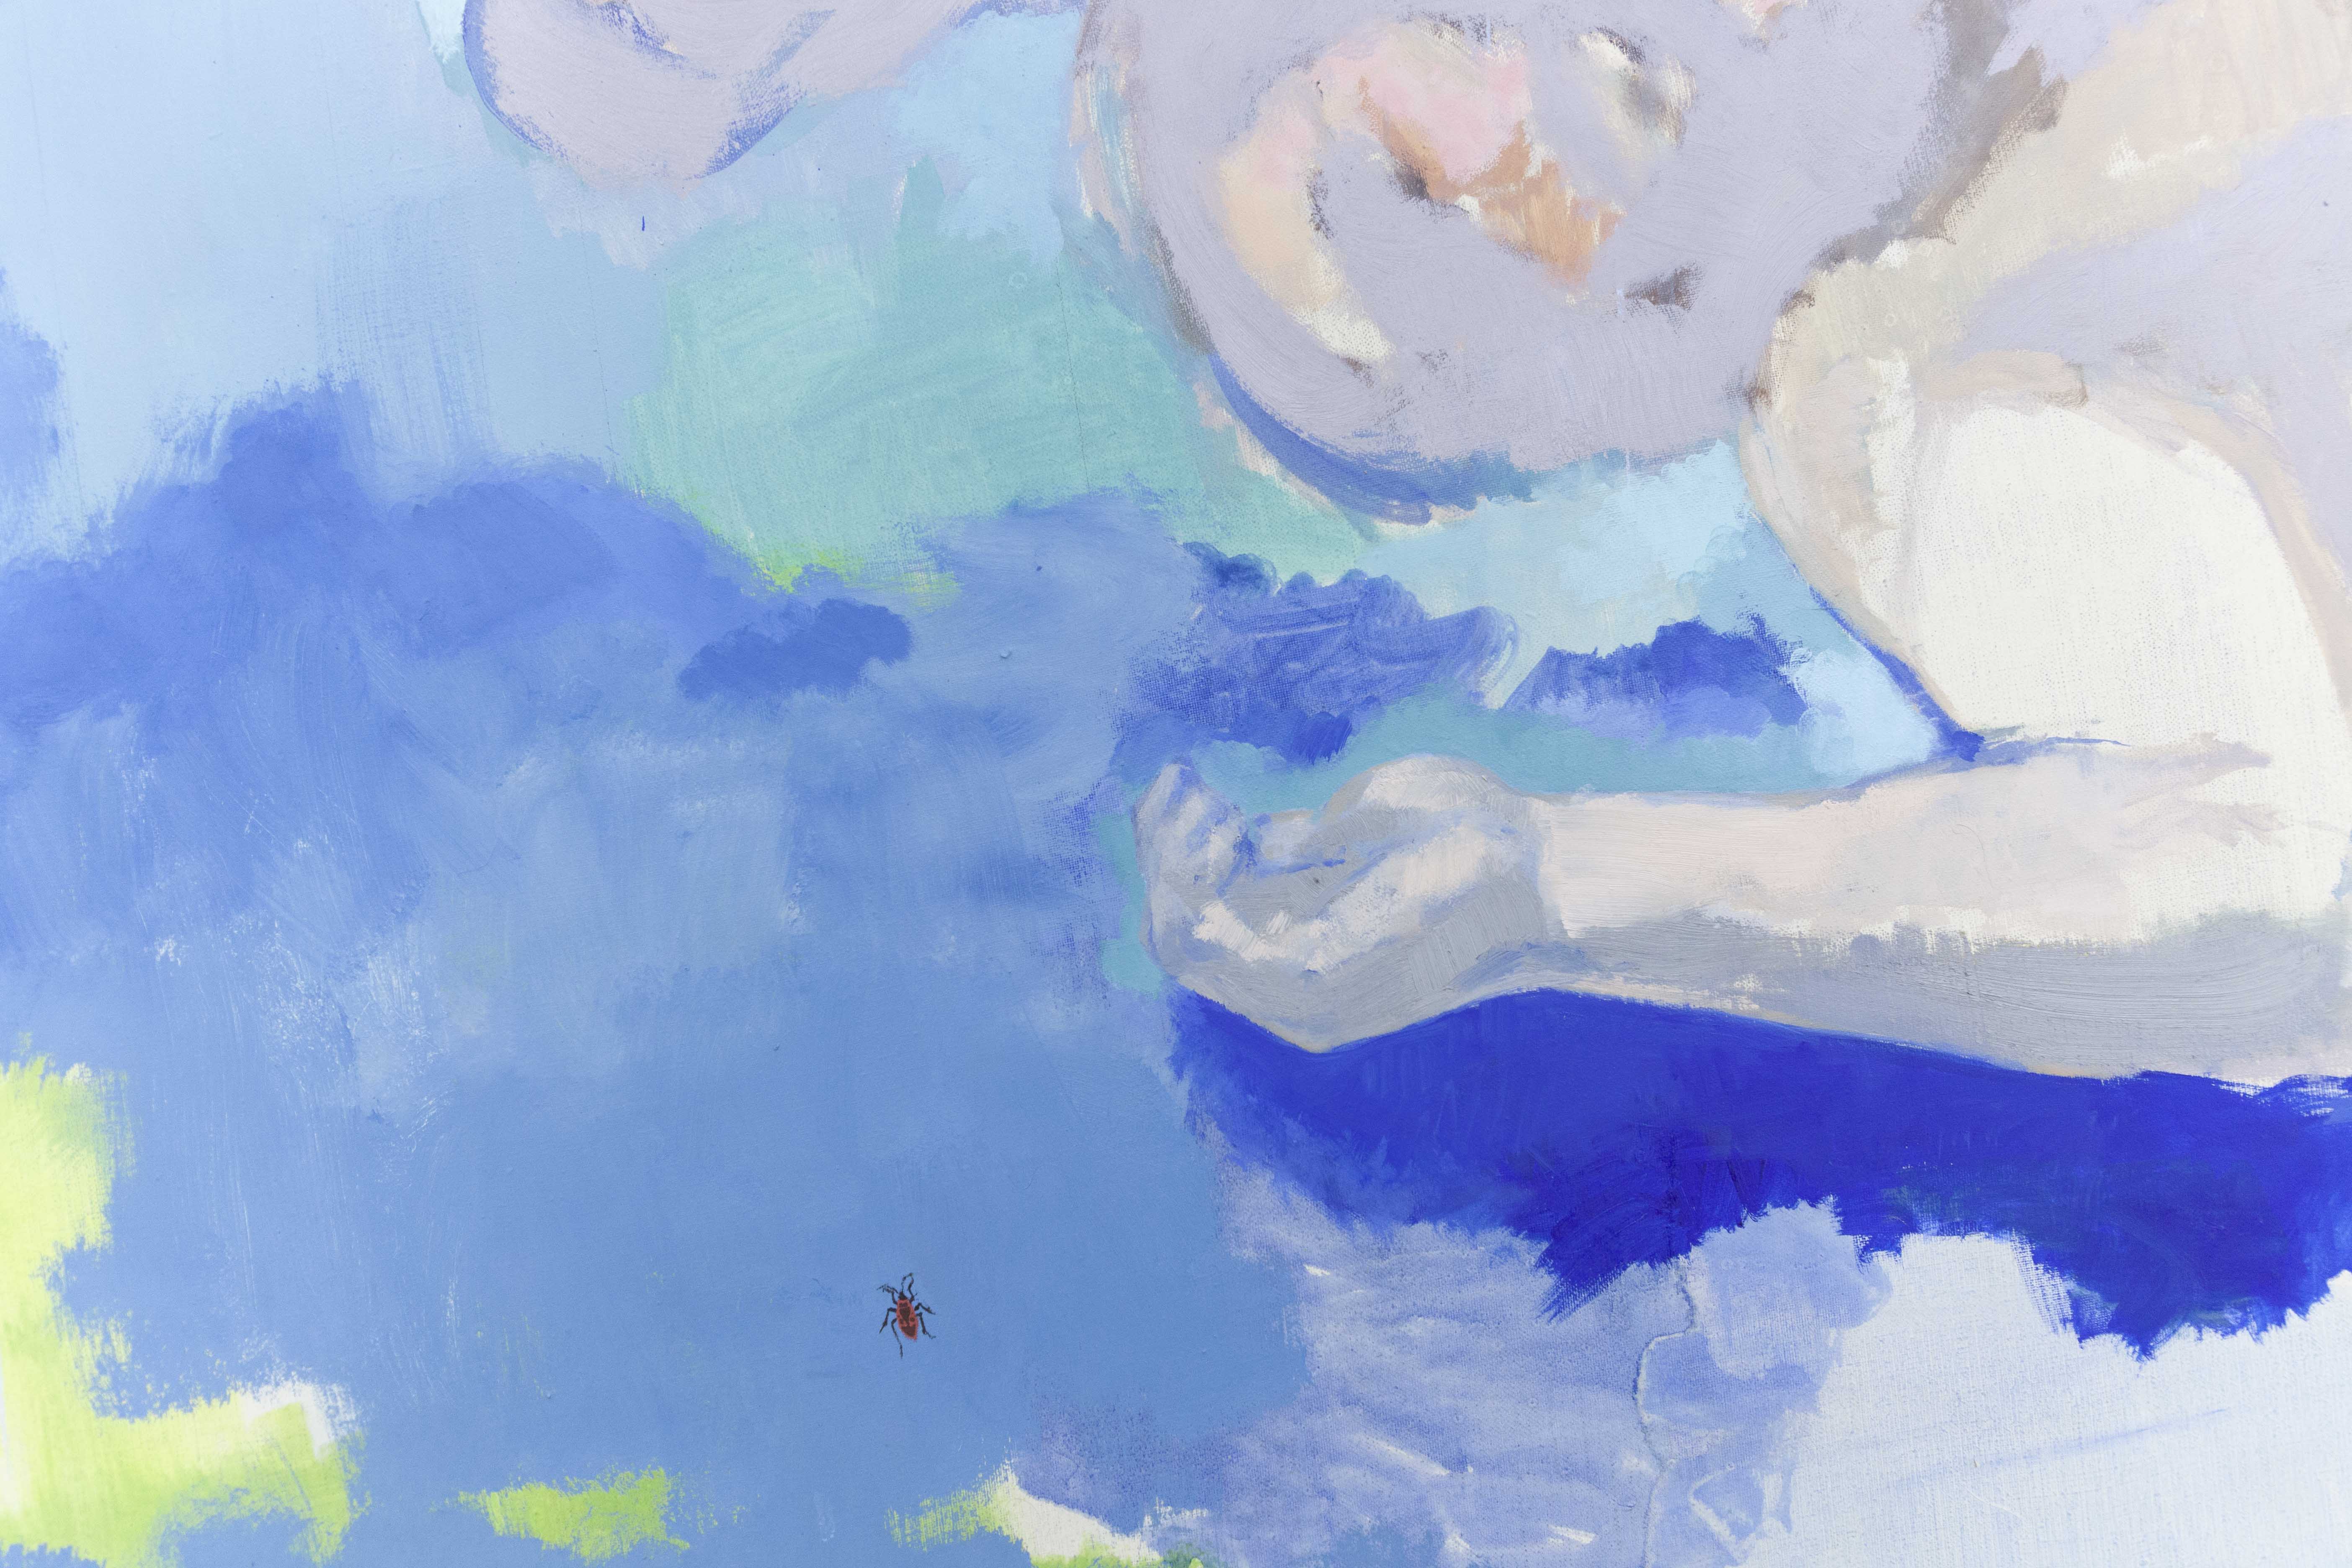 Sans titre, couple devant un volet bleu, 2019, huile sur toile, 195 x 180 cm_photo Julie Coulon_web_3